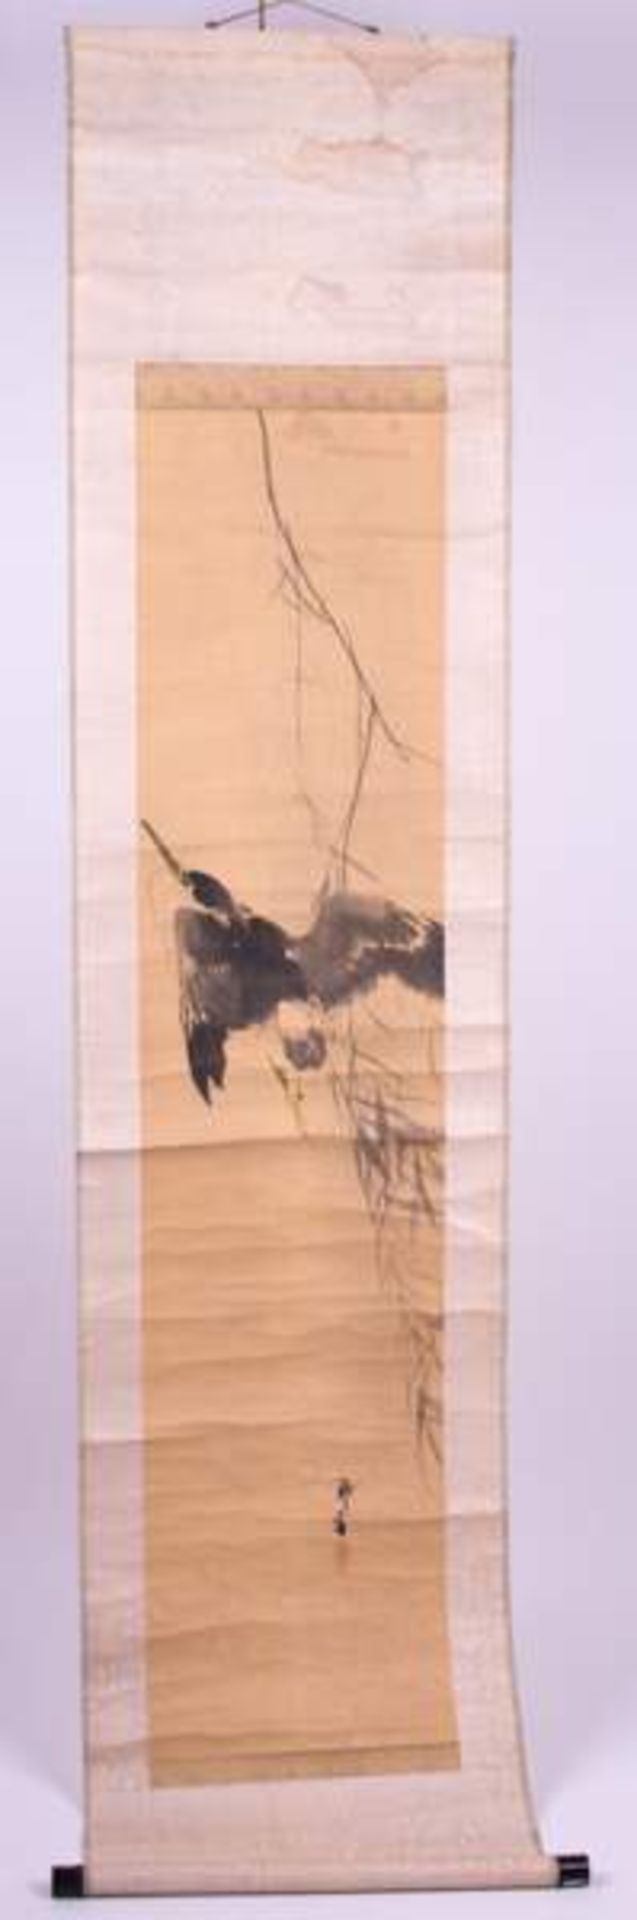 Rollbild China / Scroll painting, China "auffliegender Vogel(Kingfischer)", Tusch-Malerei auf